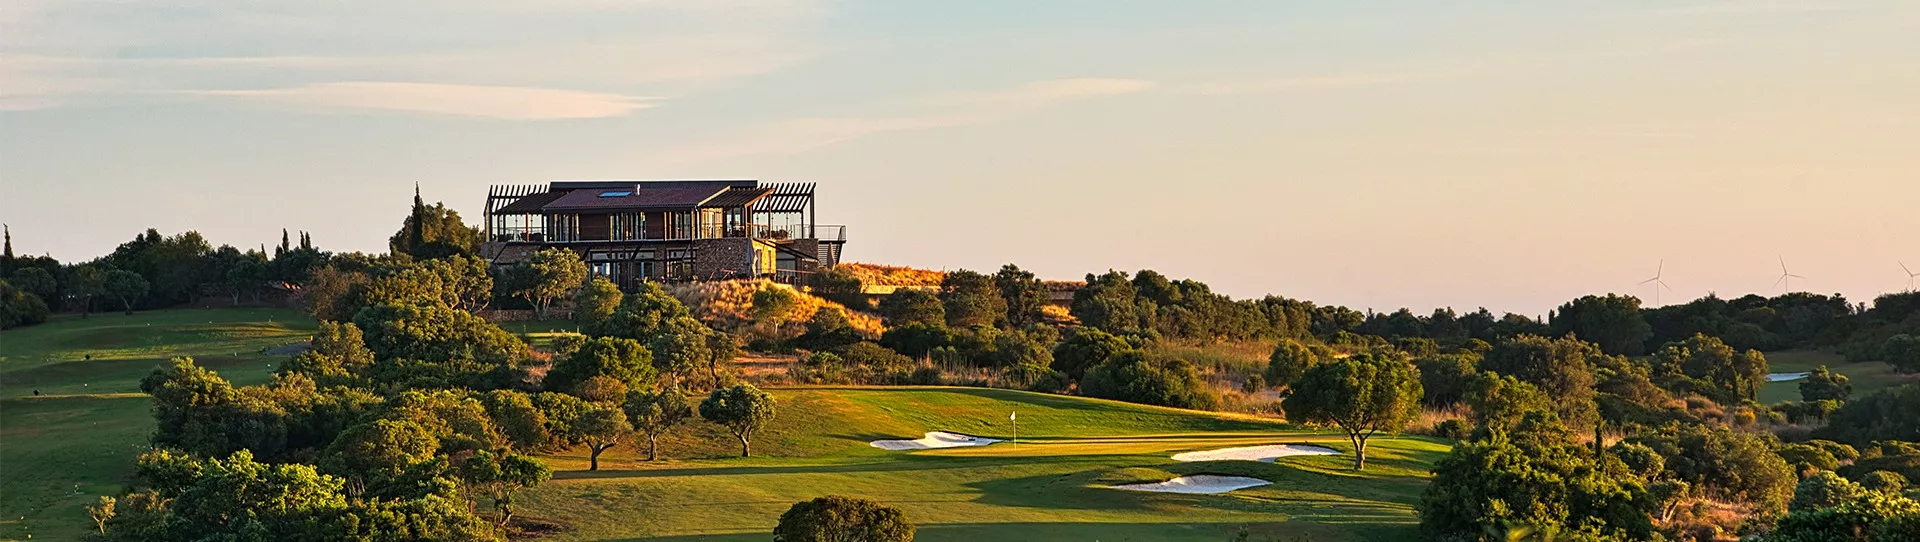 Portugal golf courses - Espiche Golf Course - Photo 1